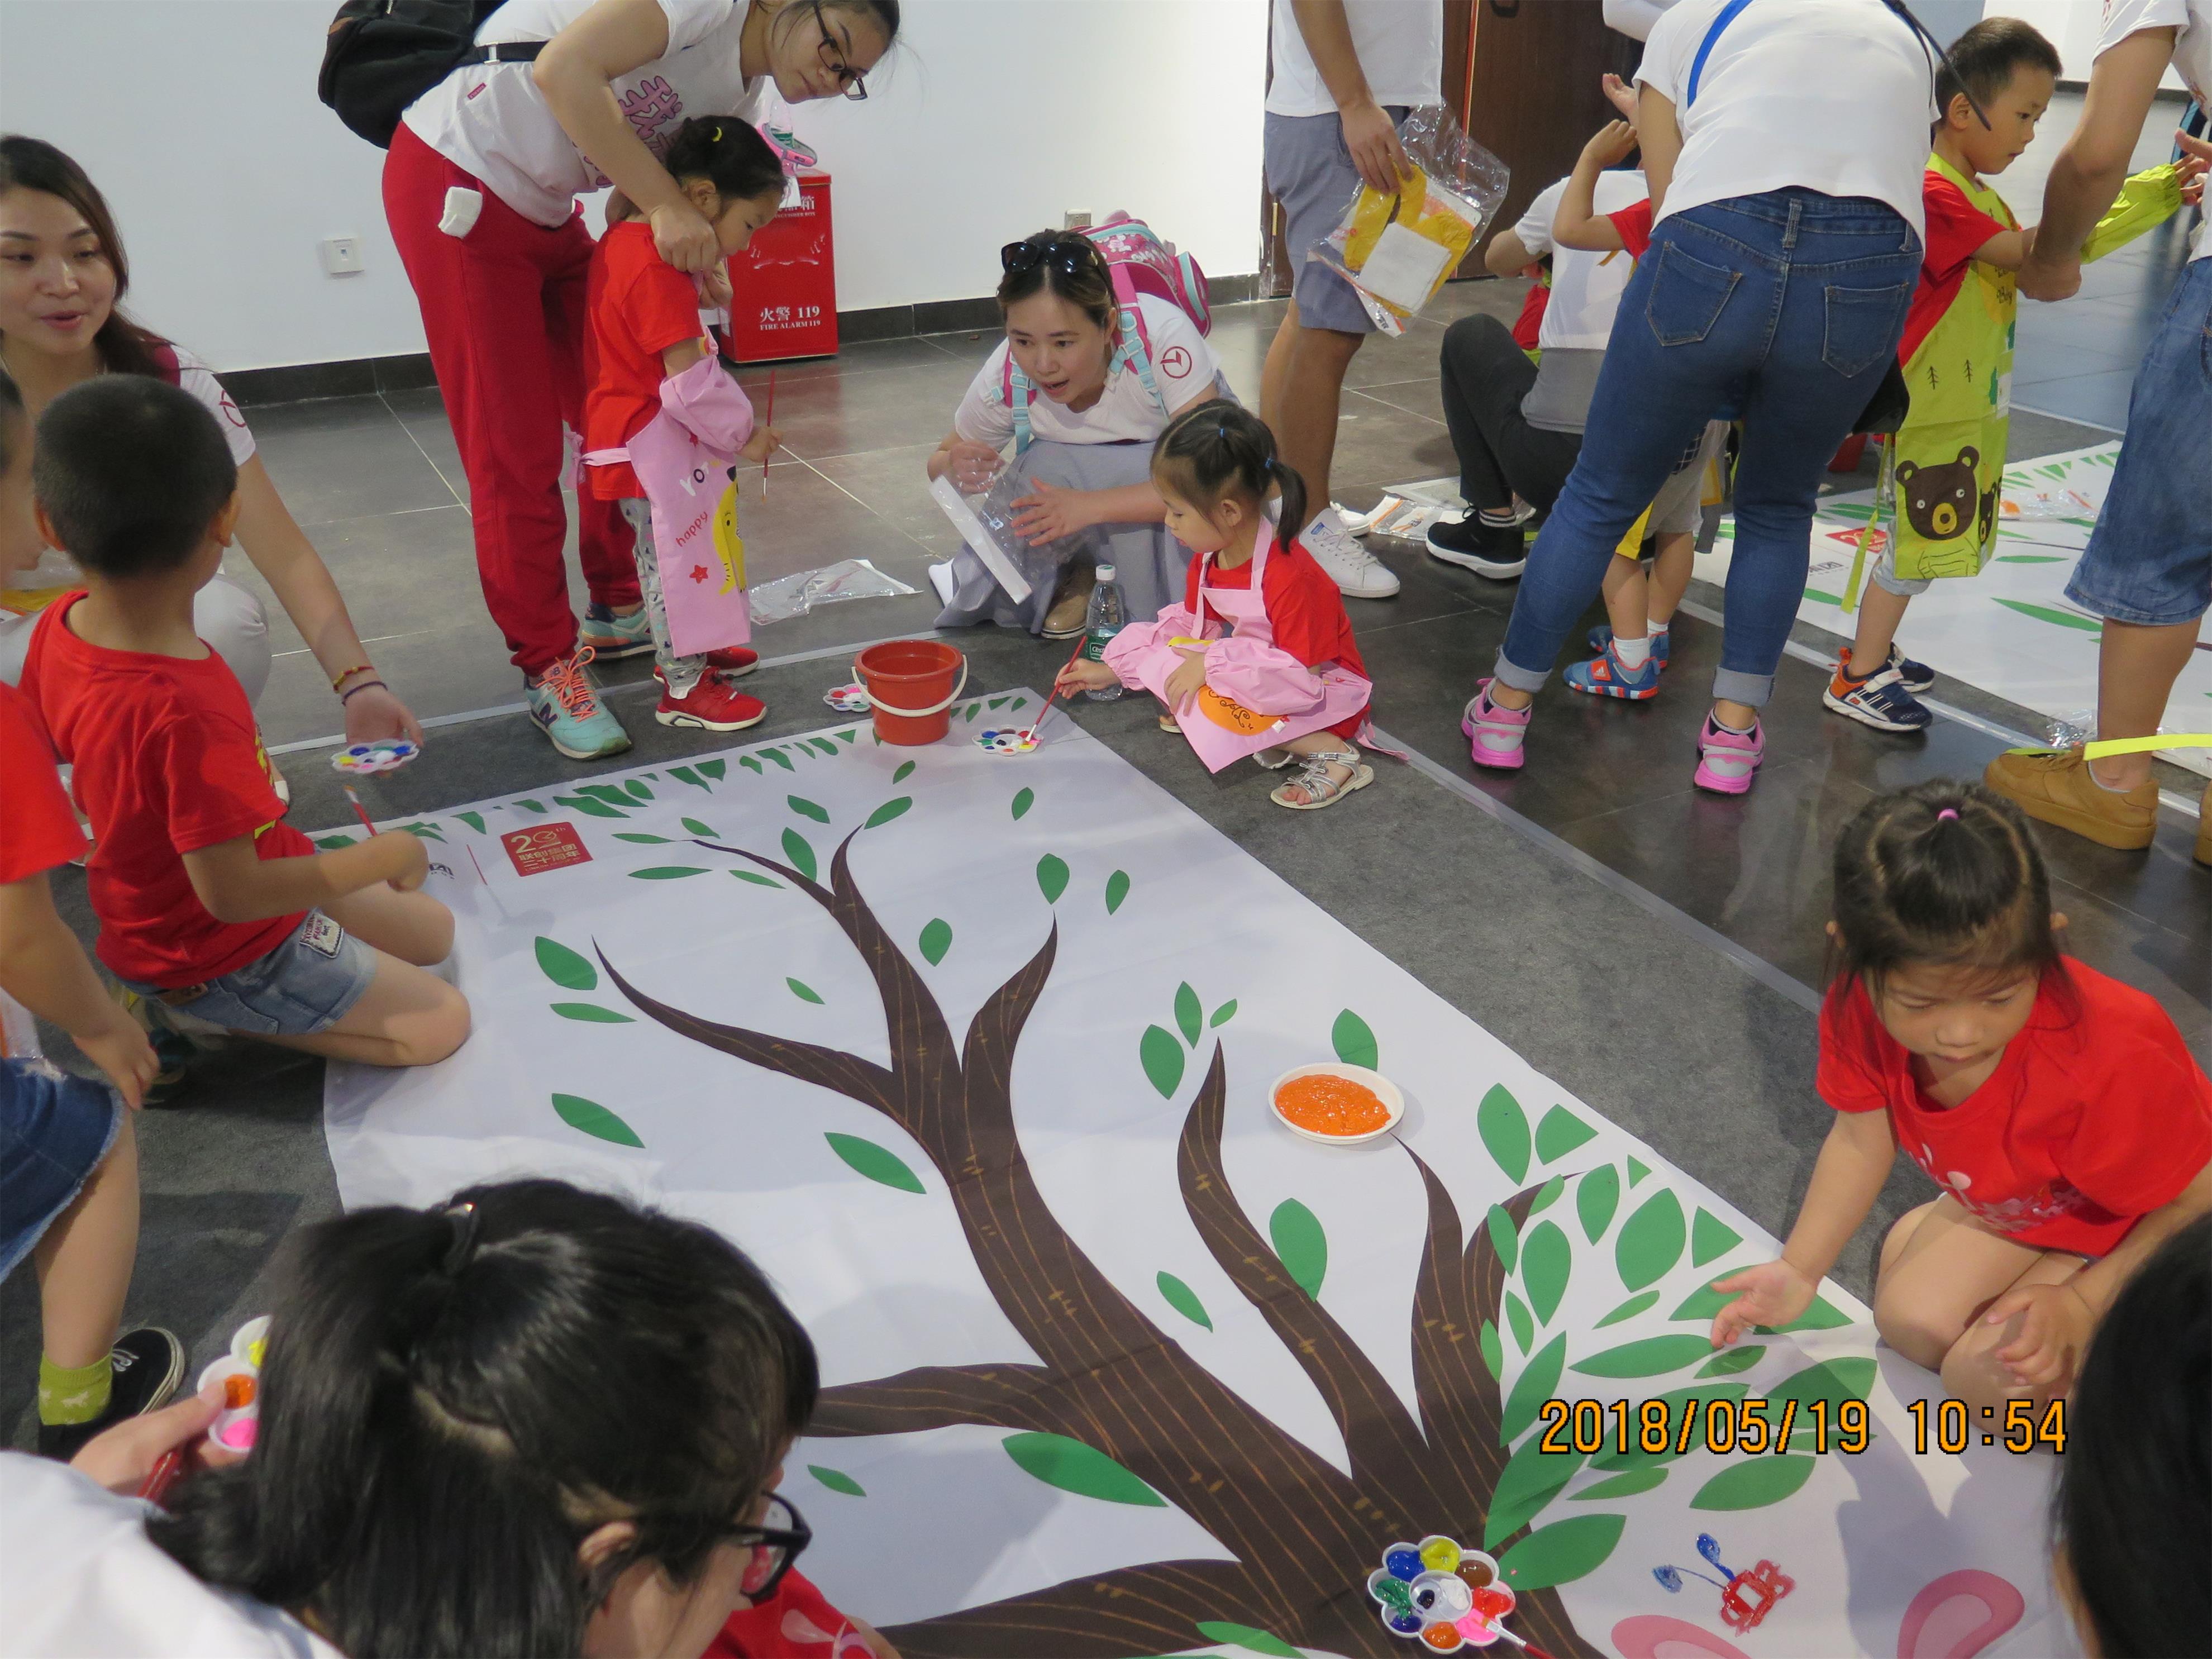 2018年5月联创集团“六一儿童节”-亲子活动